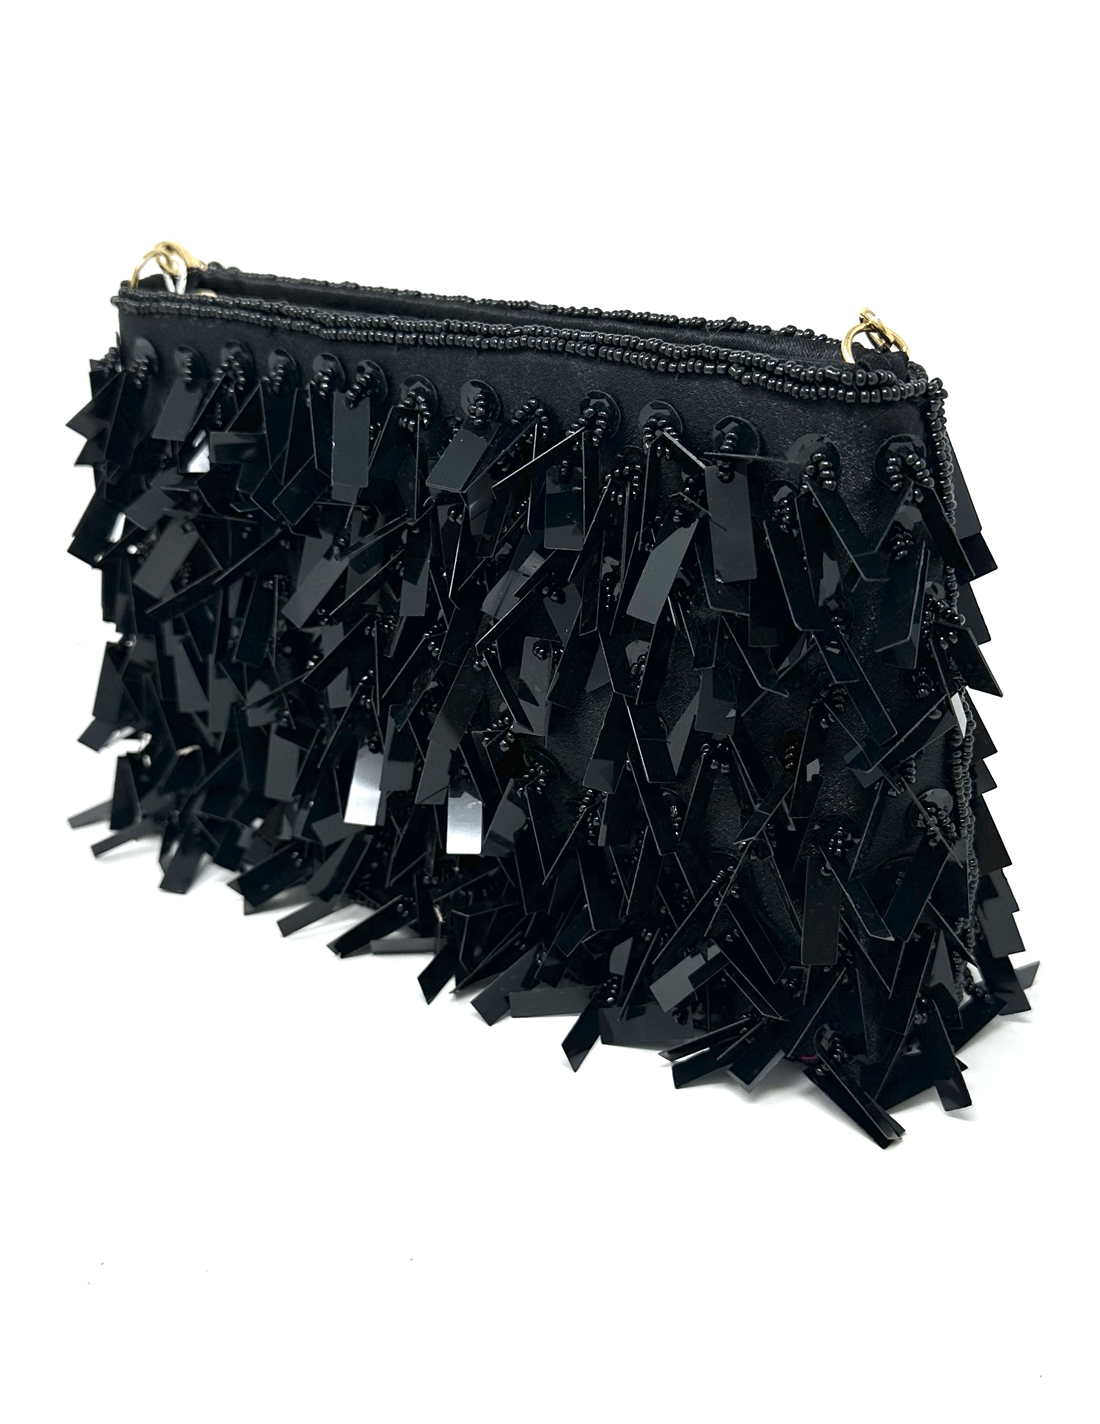 Black Morocco Bag